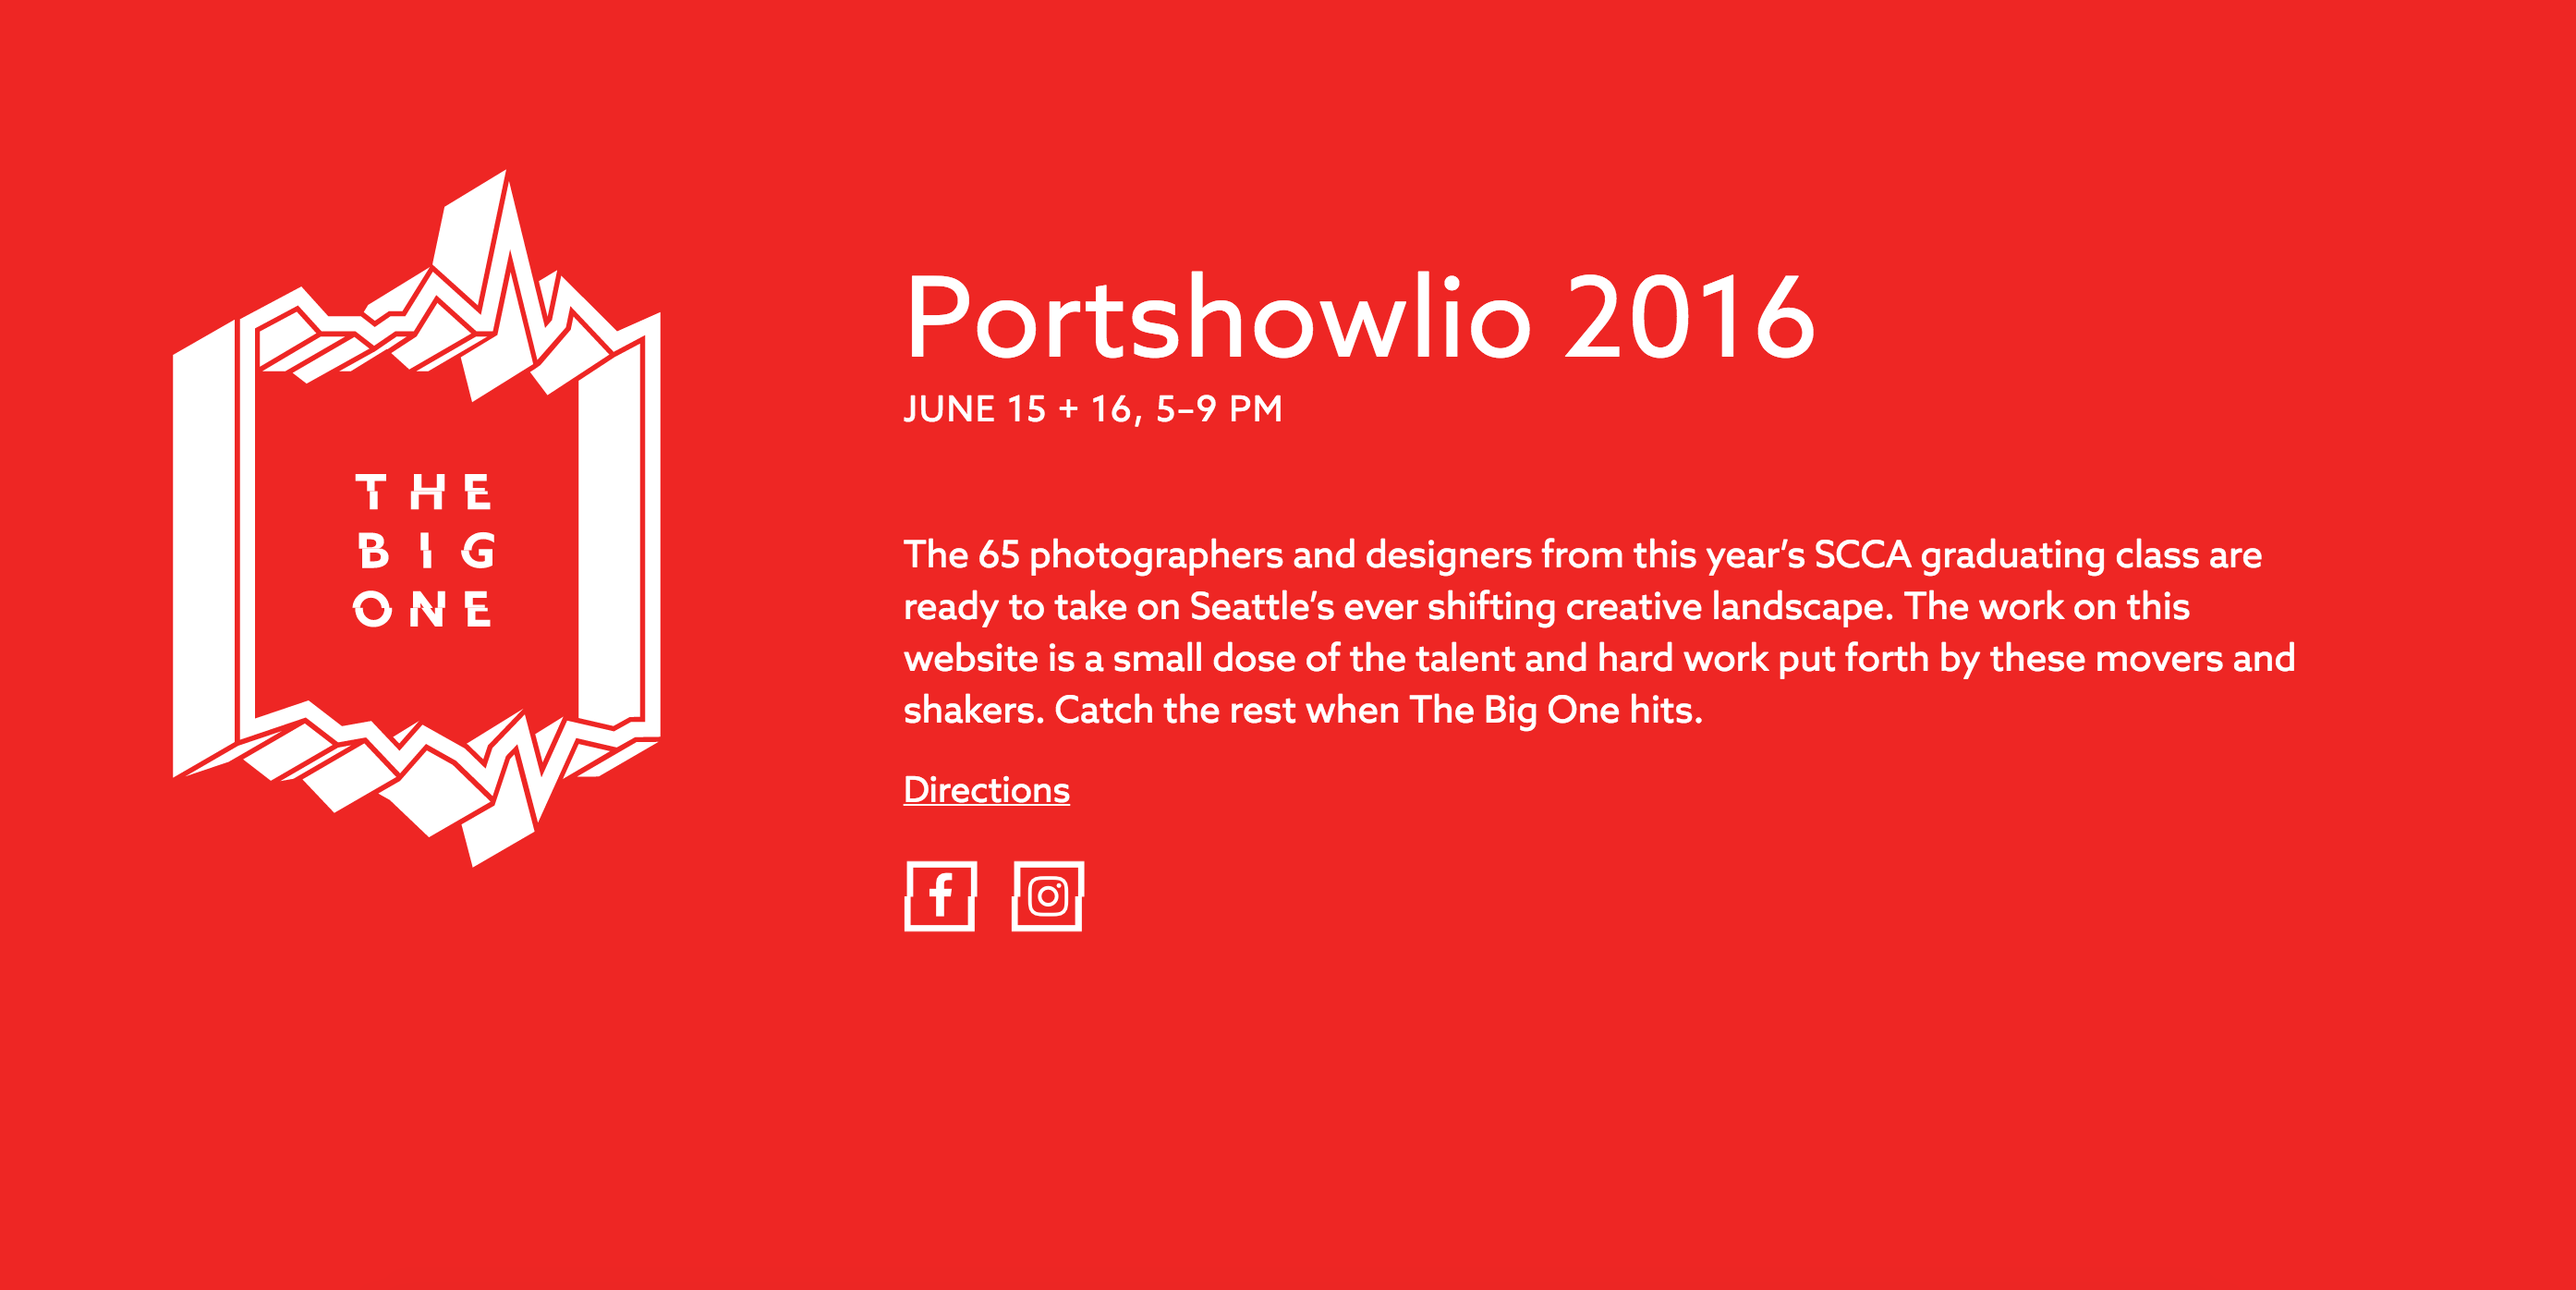 Portshowlio 2016